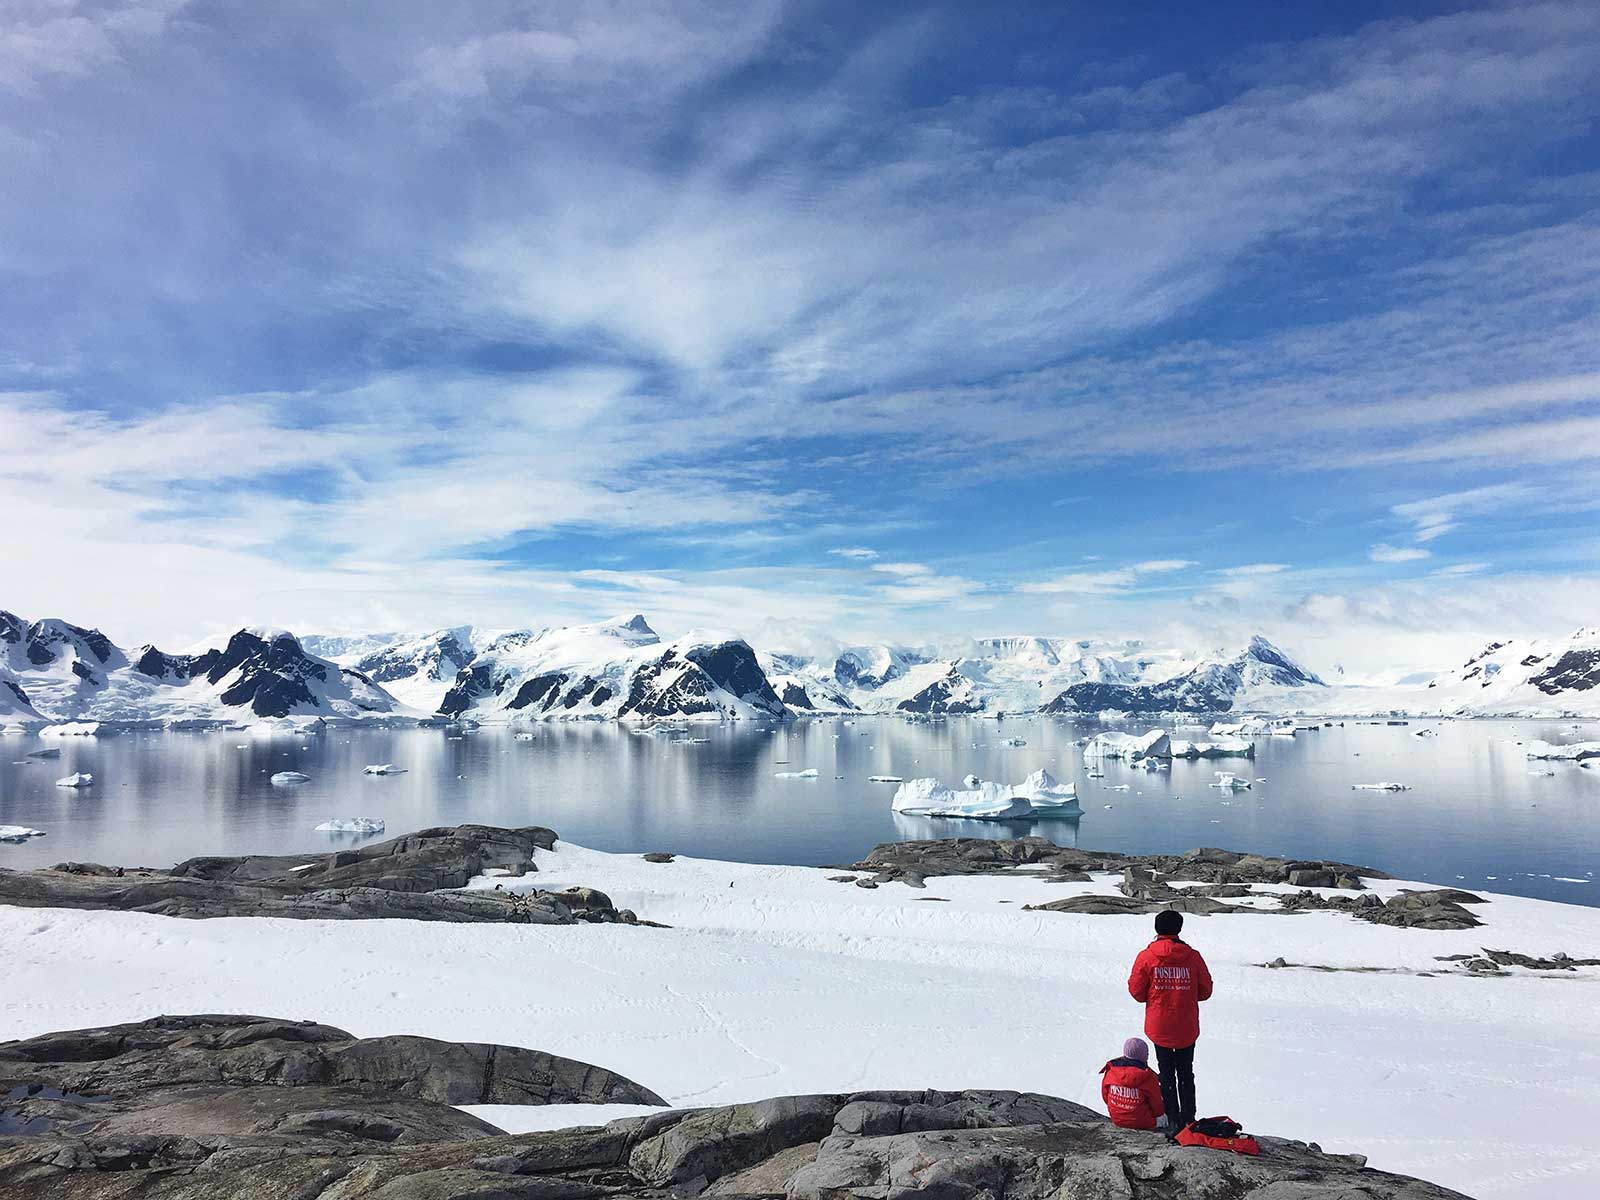 The unique skiing landscape of Antarctica